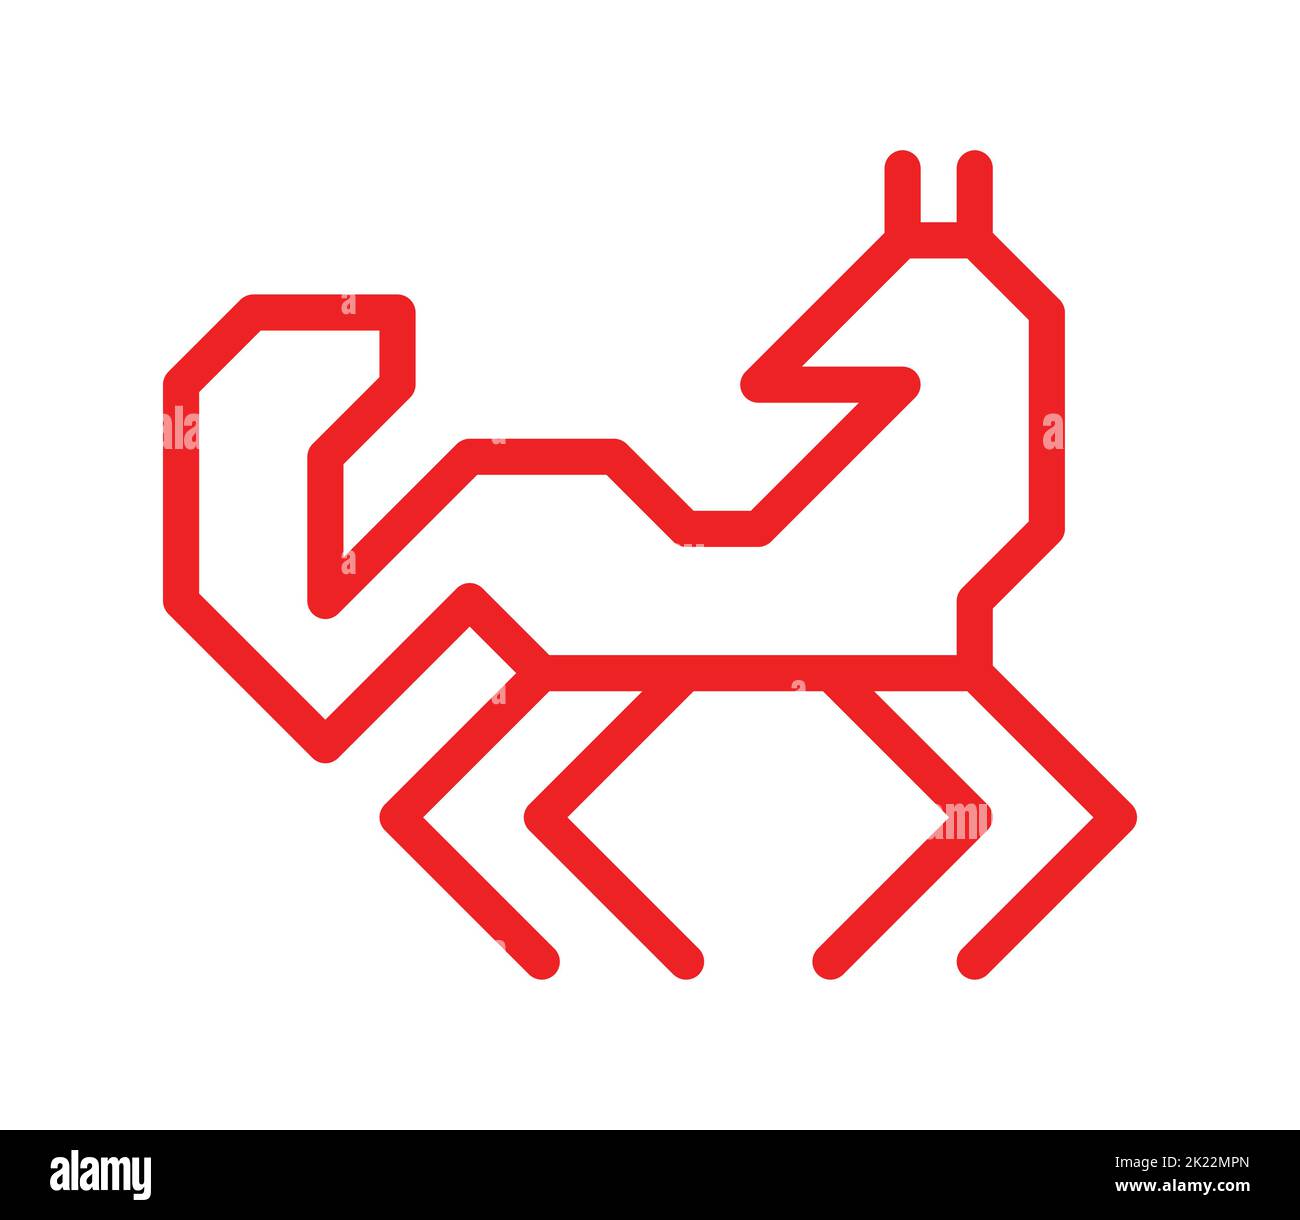 Concept plat à isolation vectorielle avec symbole animal simplifié rouge du chien esquimau. Icône en forme d'animal ornemental traditionnel des habitants de Carélie et de Finlande Illustration de Vecteur